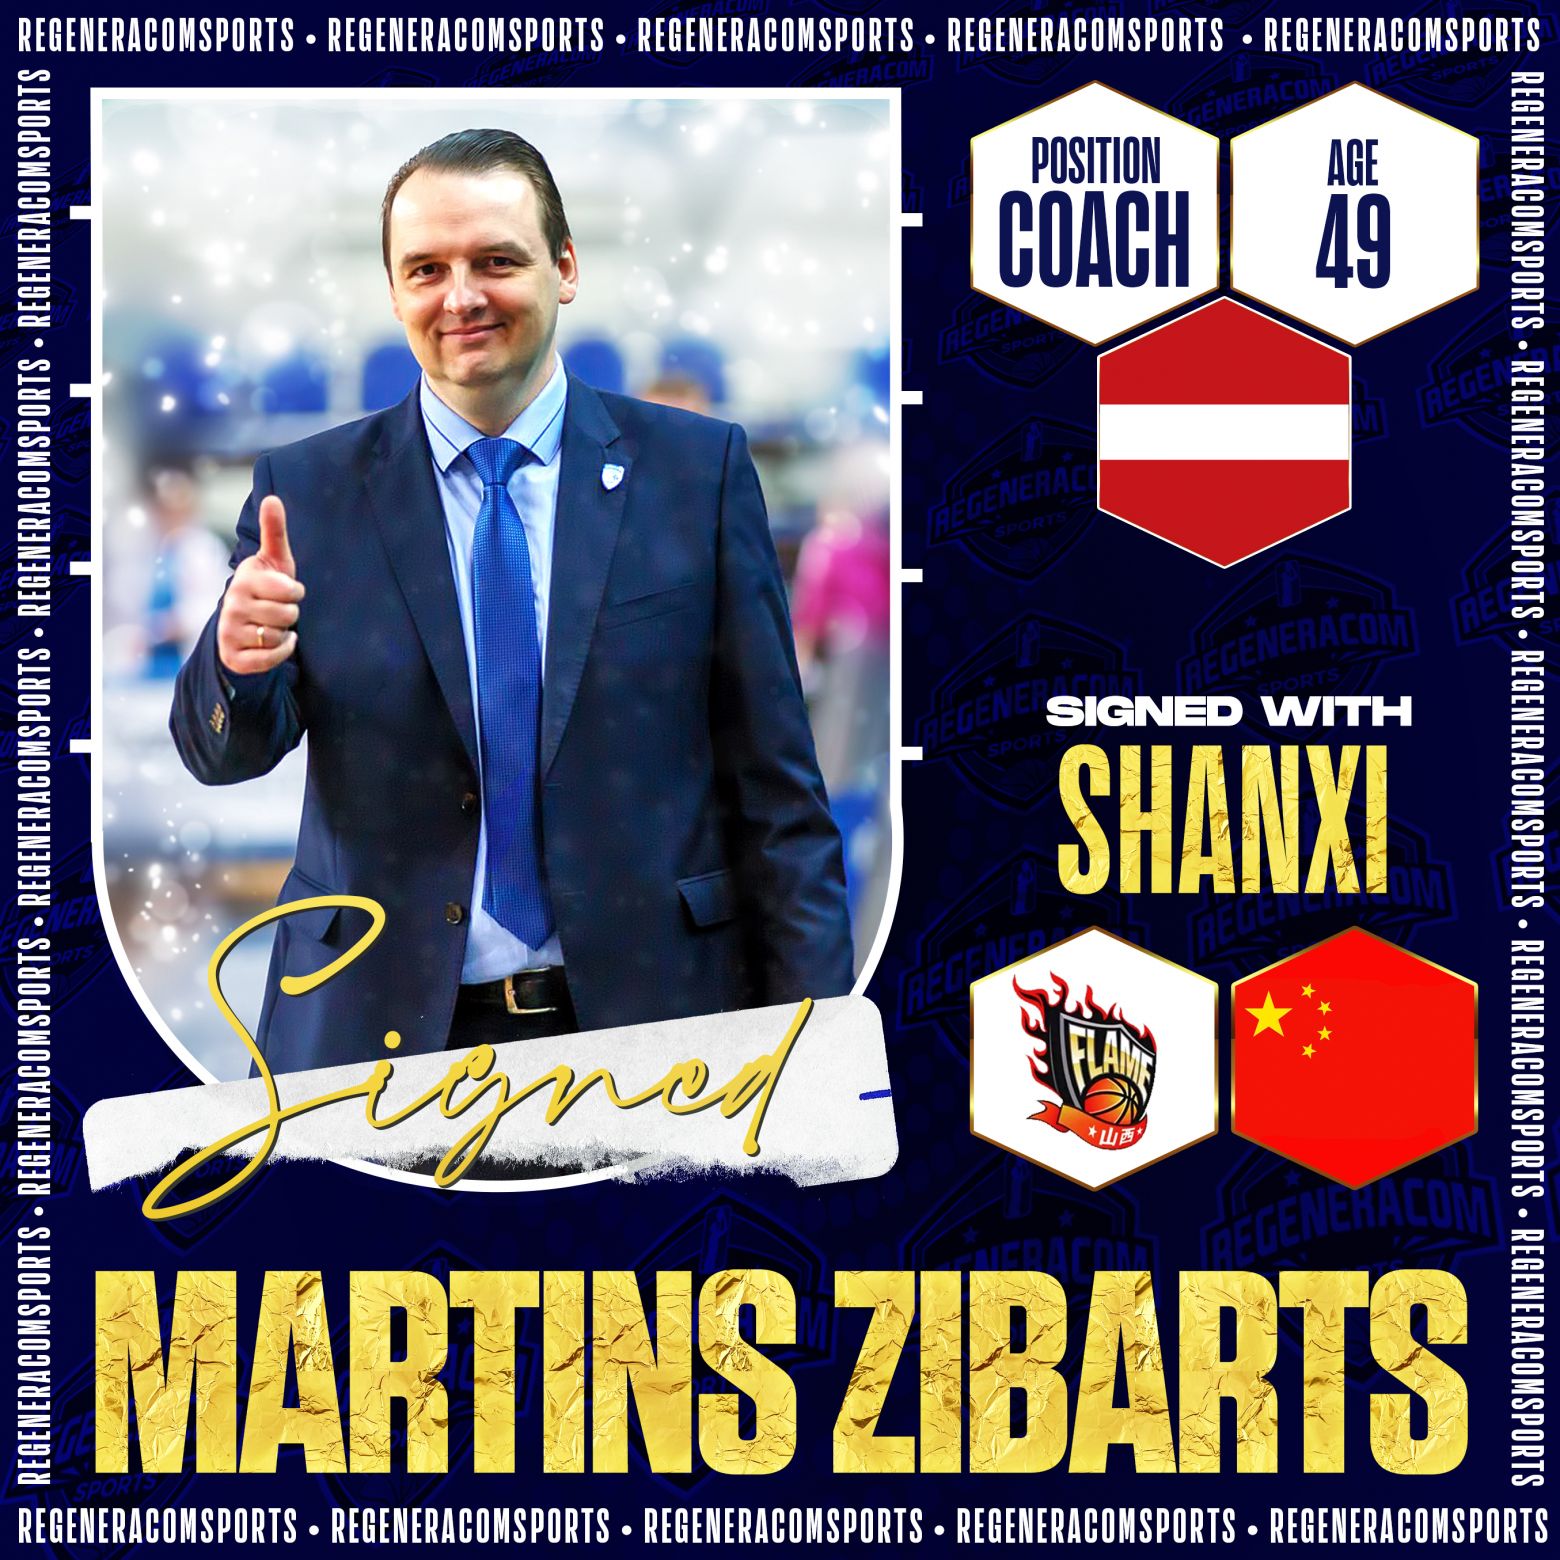 MARTINS ZIBARTS ha firmado en China como entrenador jefe de Shanxi para la temporada 2023/24